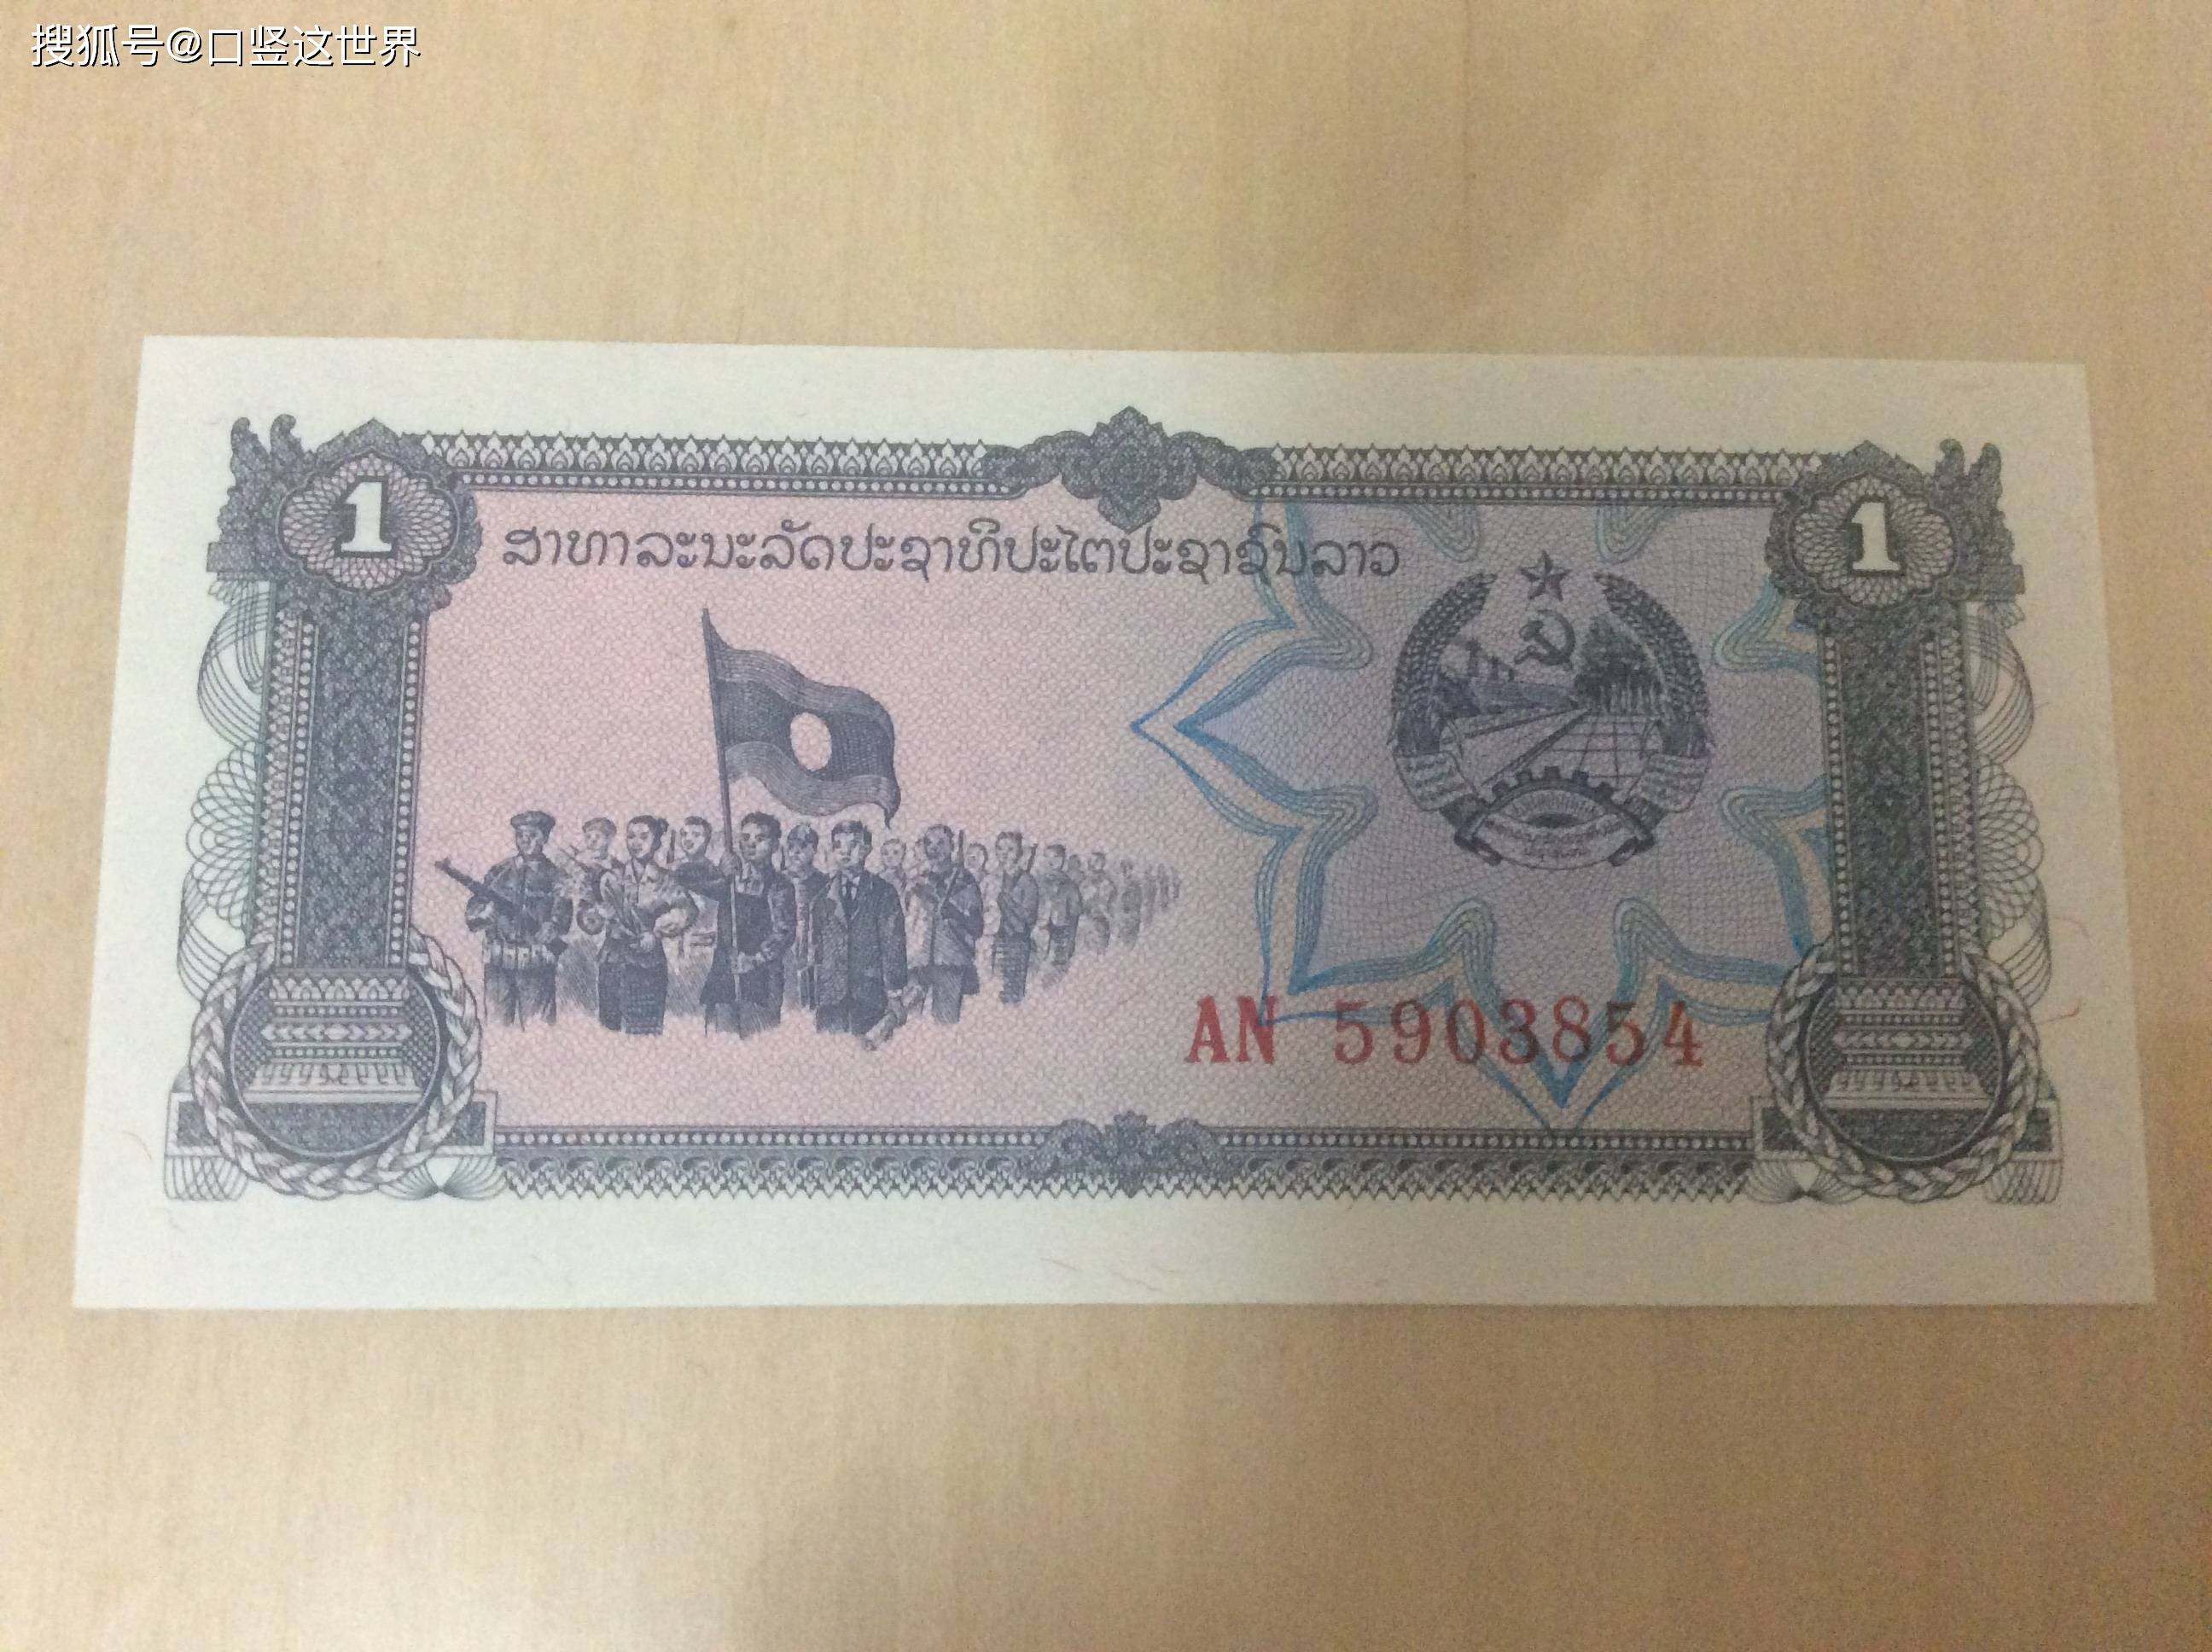 1000元可以兑换120万老挝基普，这笔钱能做什么，当地美女揭秘